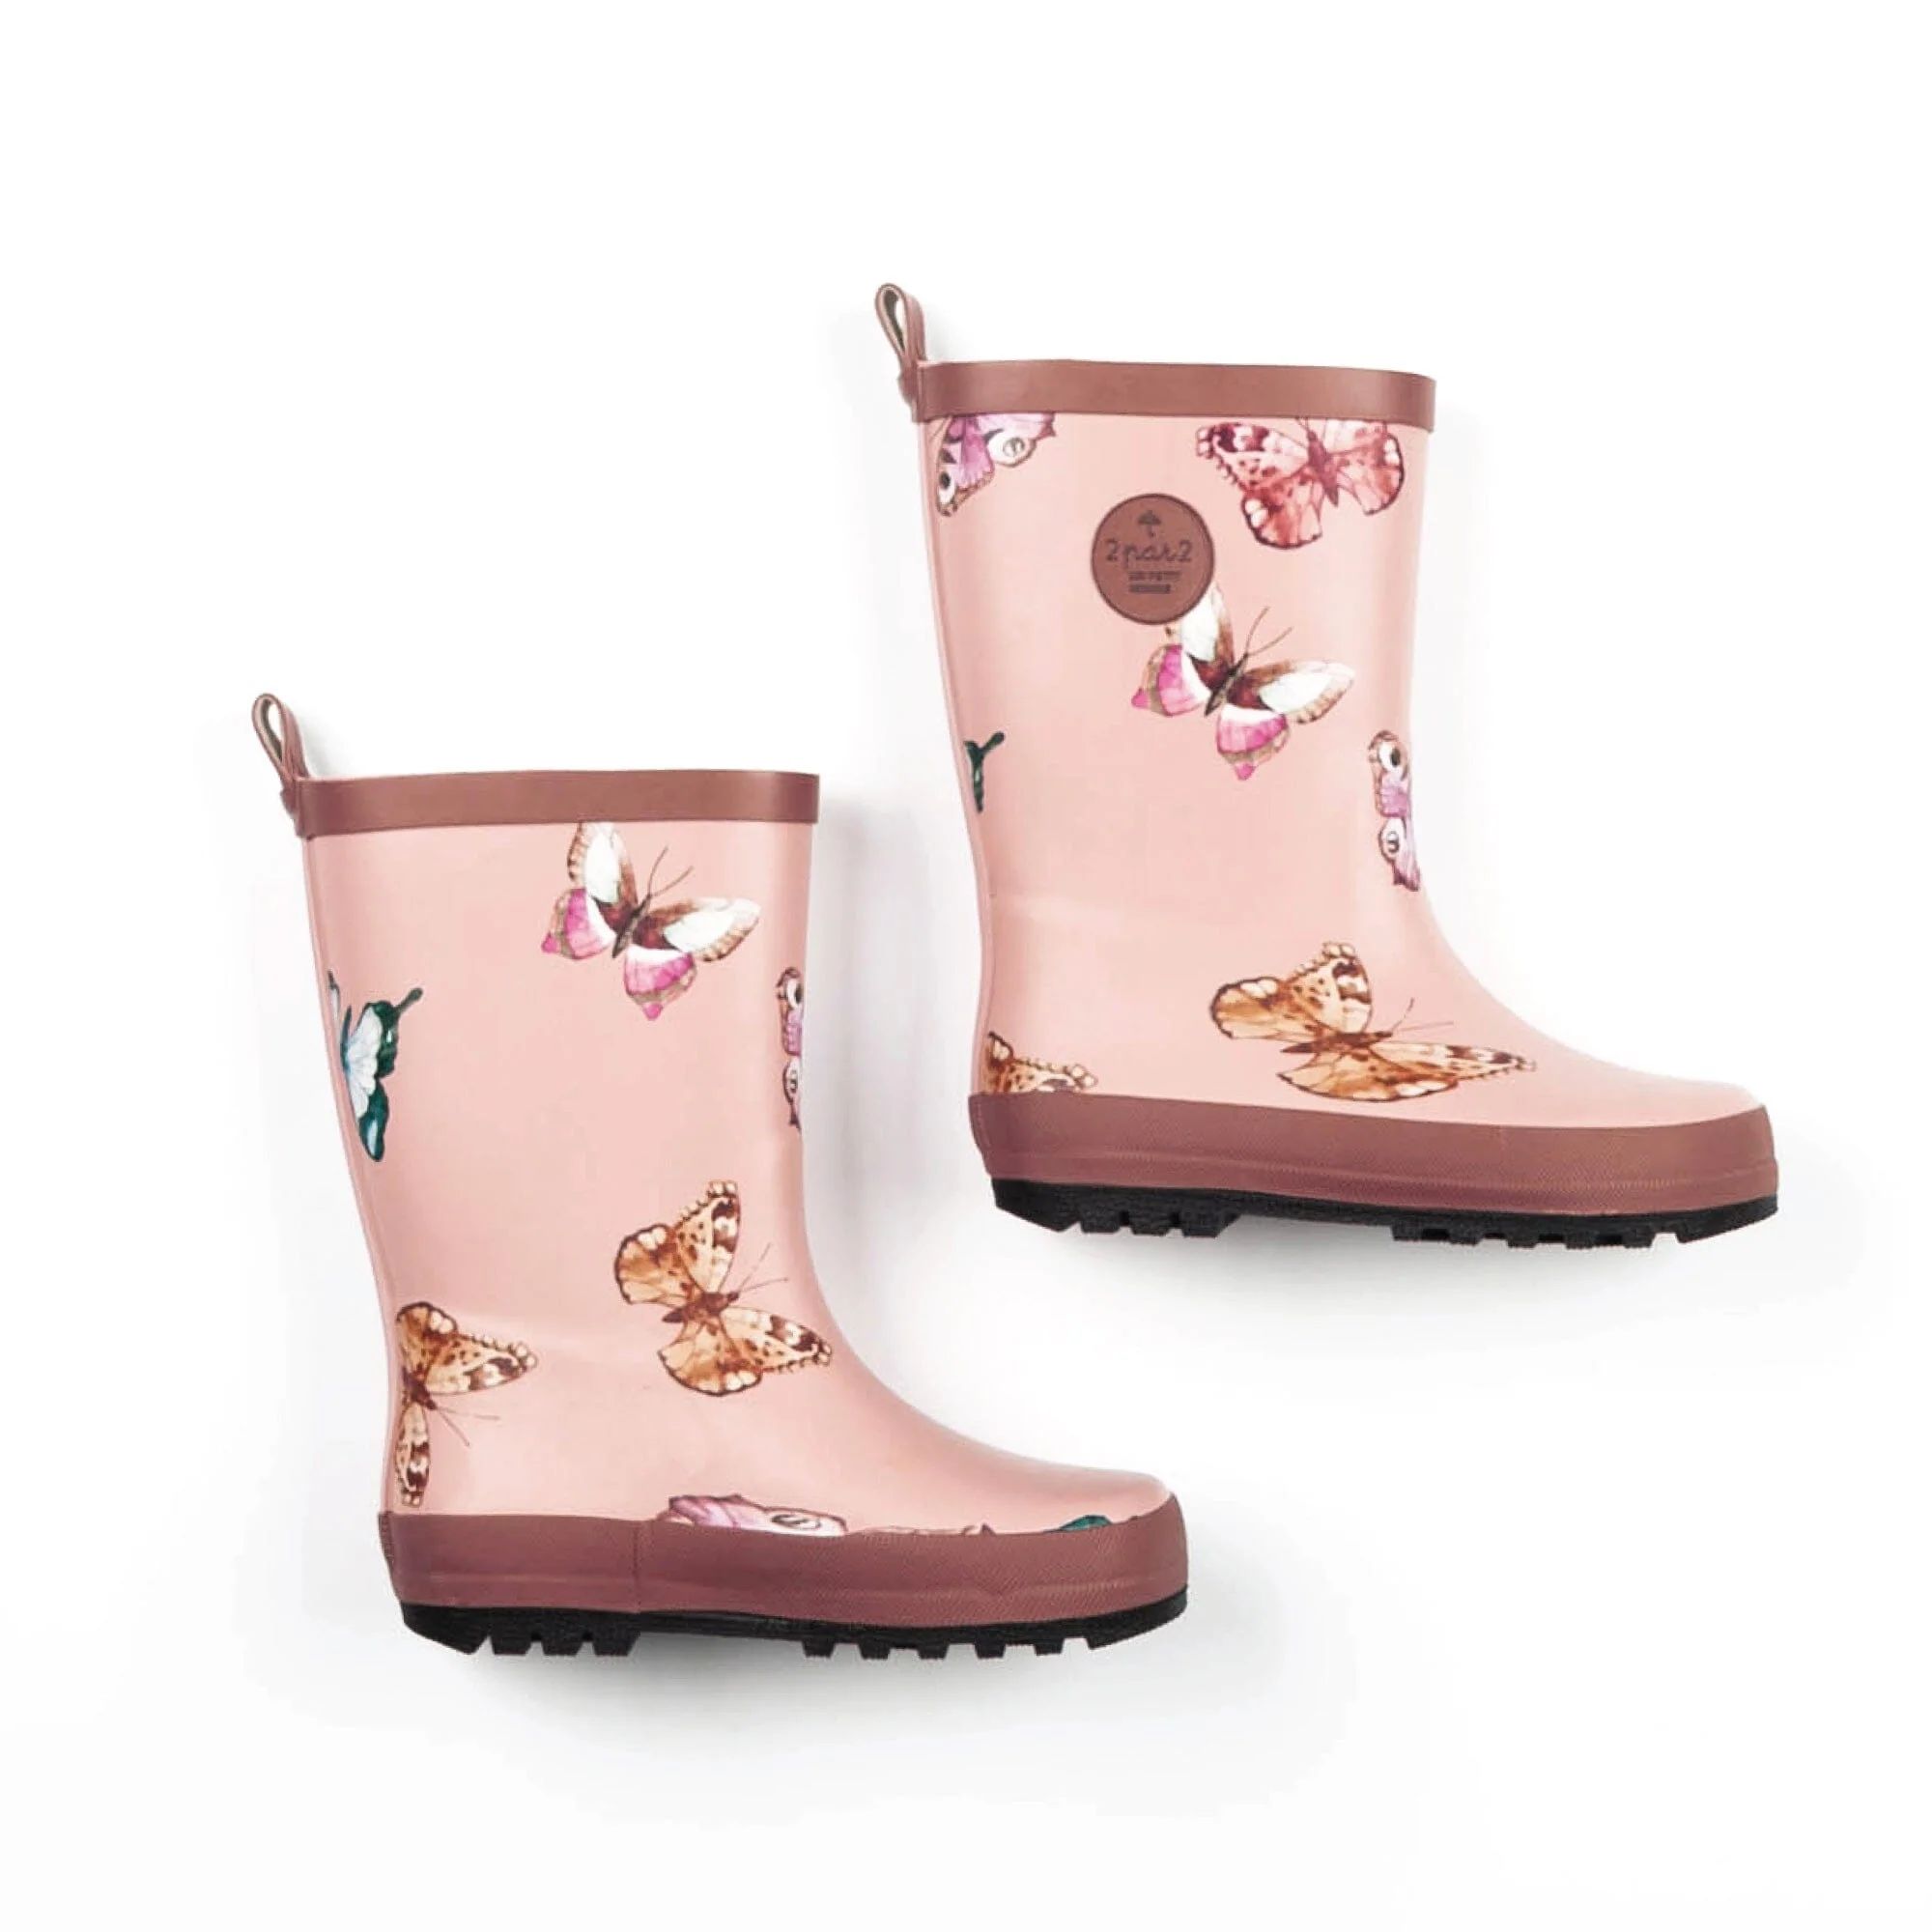 Printed Rain Boots Pink Watercolor Butterflies | Deux par Deux Childrens Designer Clothing